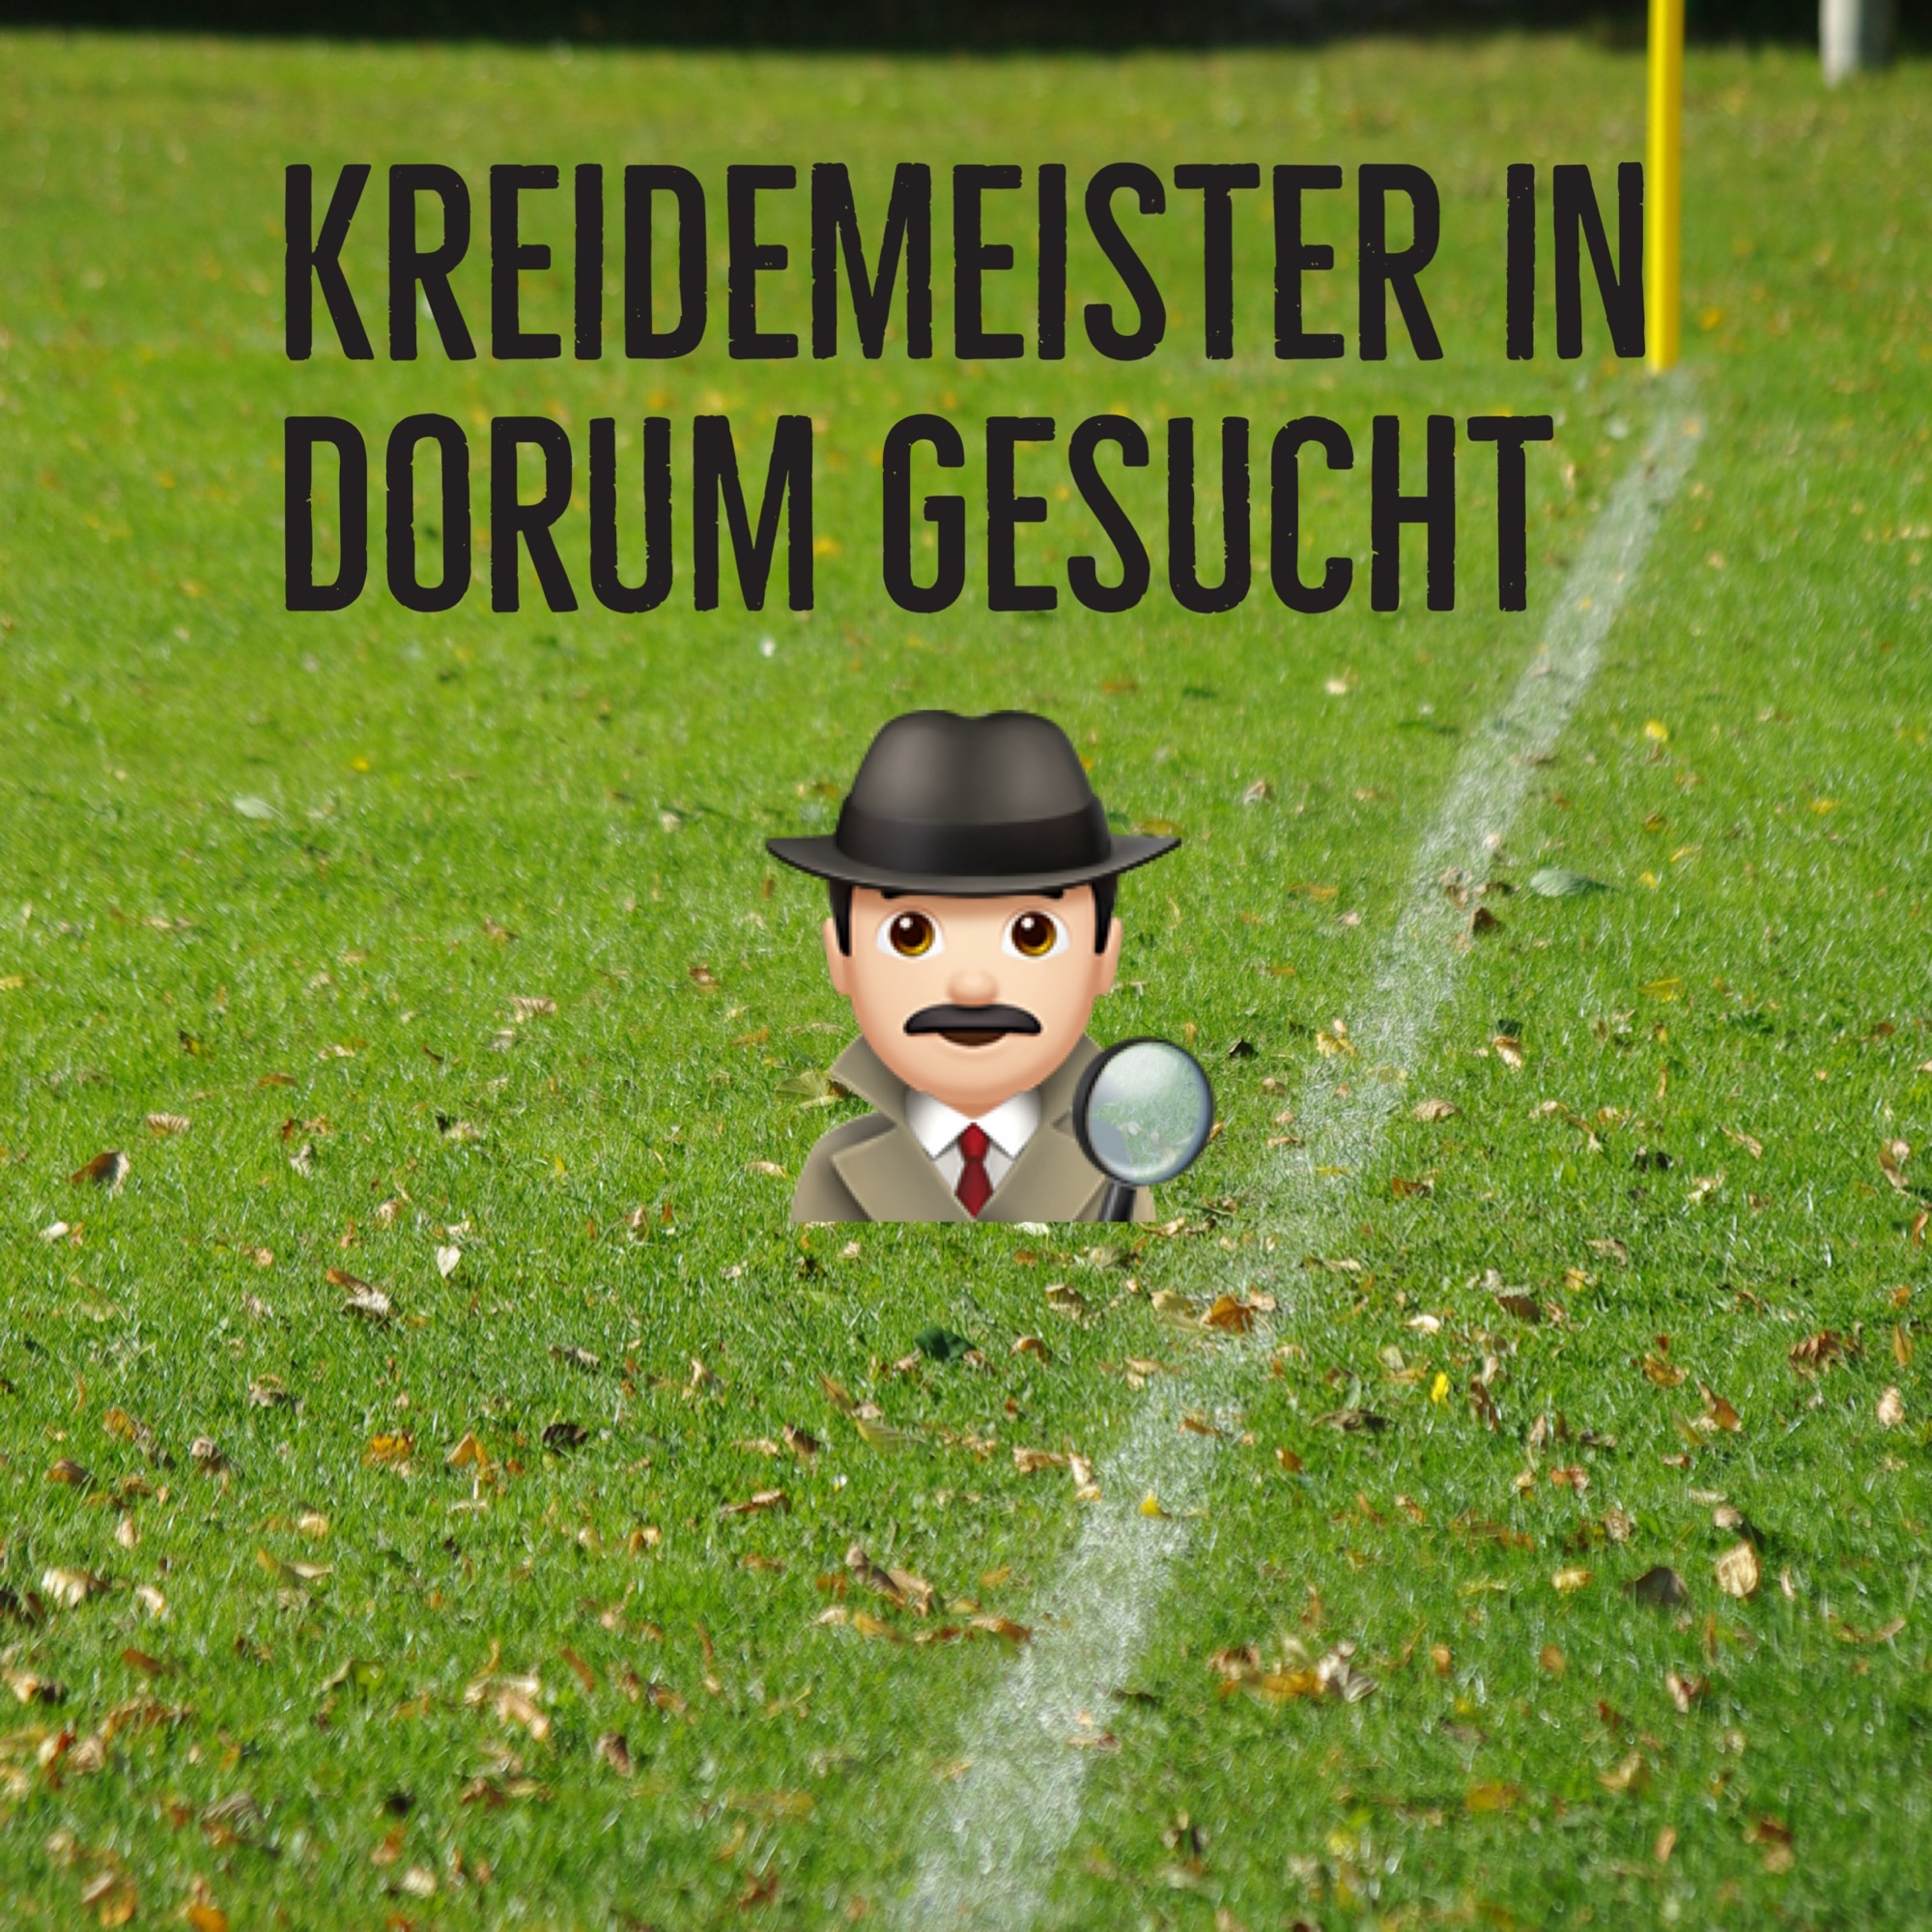 Read more about the article Kreidemeister für die Sportplätze in Dorum gesucht